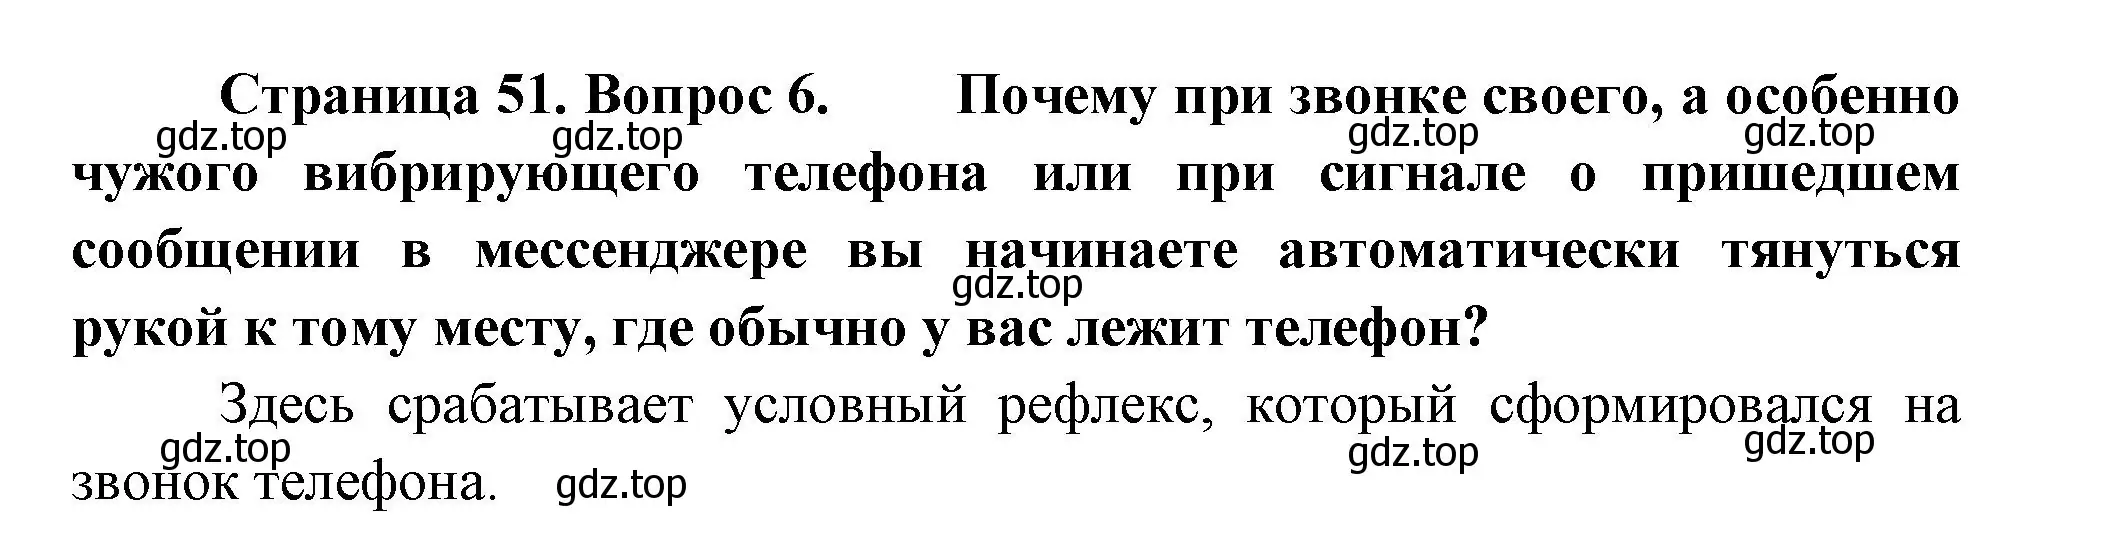 Решение номер 6 (страница 51) гдз по биологии 9 класс Пасечник, Каменский, учебник